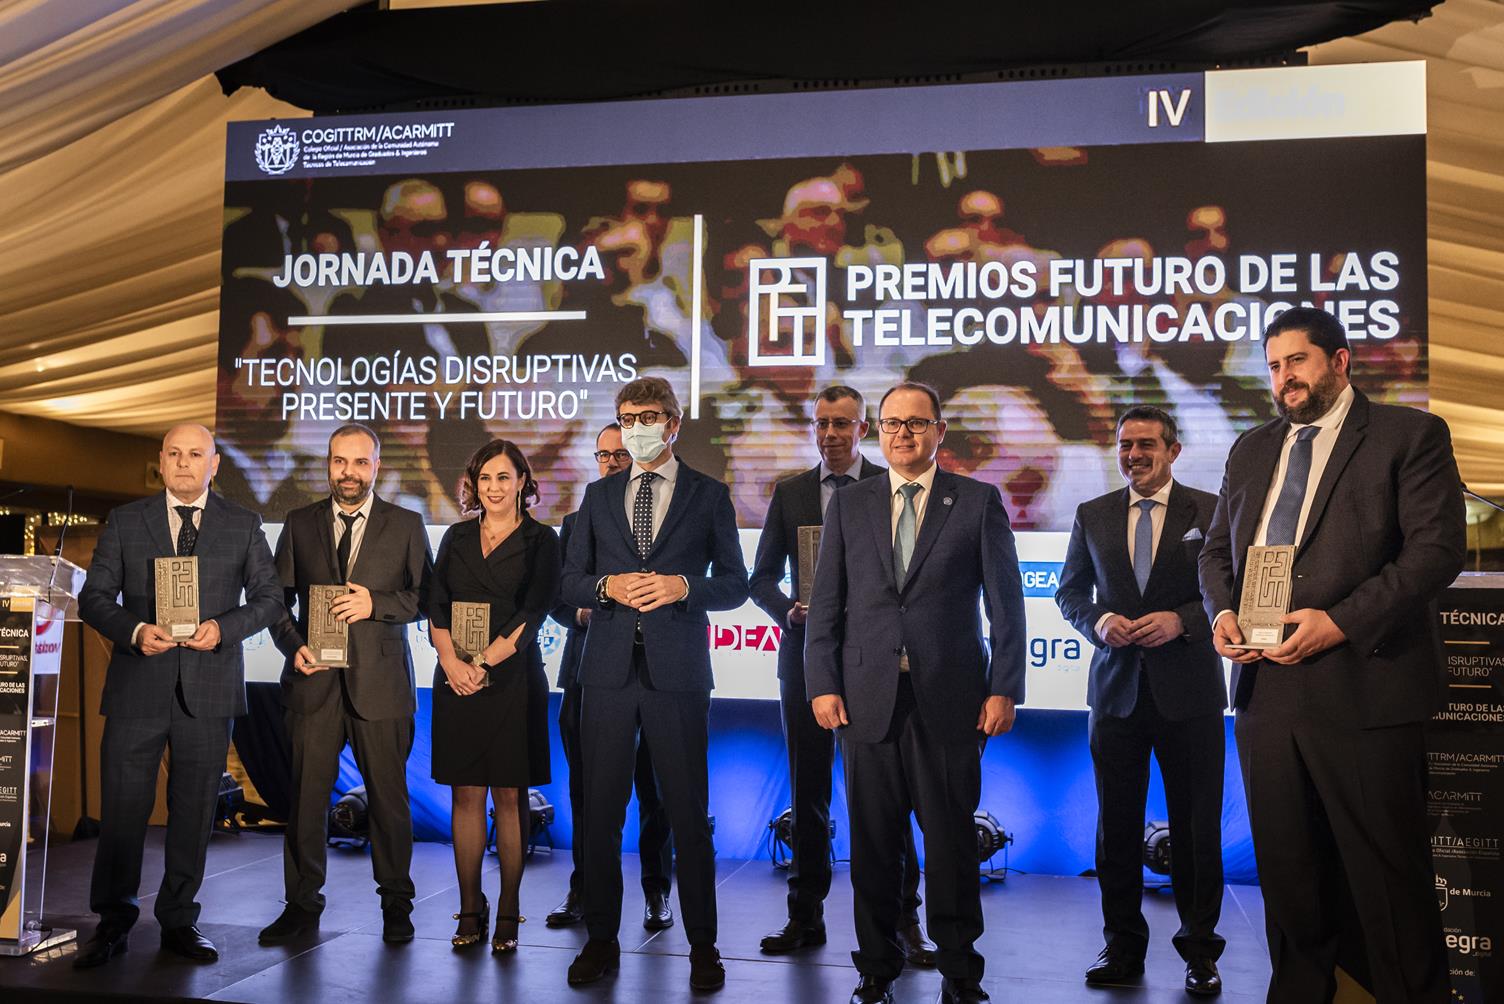 APUNTATE A  LA JORNADA Y V PREMIOS FUTURO DE LAS TELECOMUNICACIONES